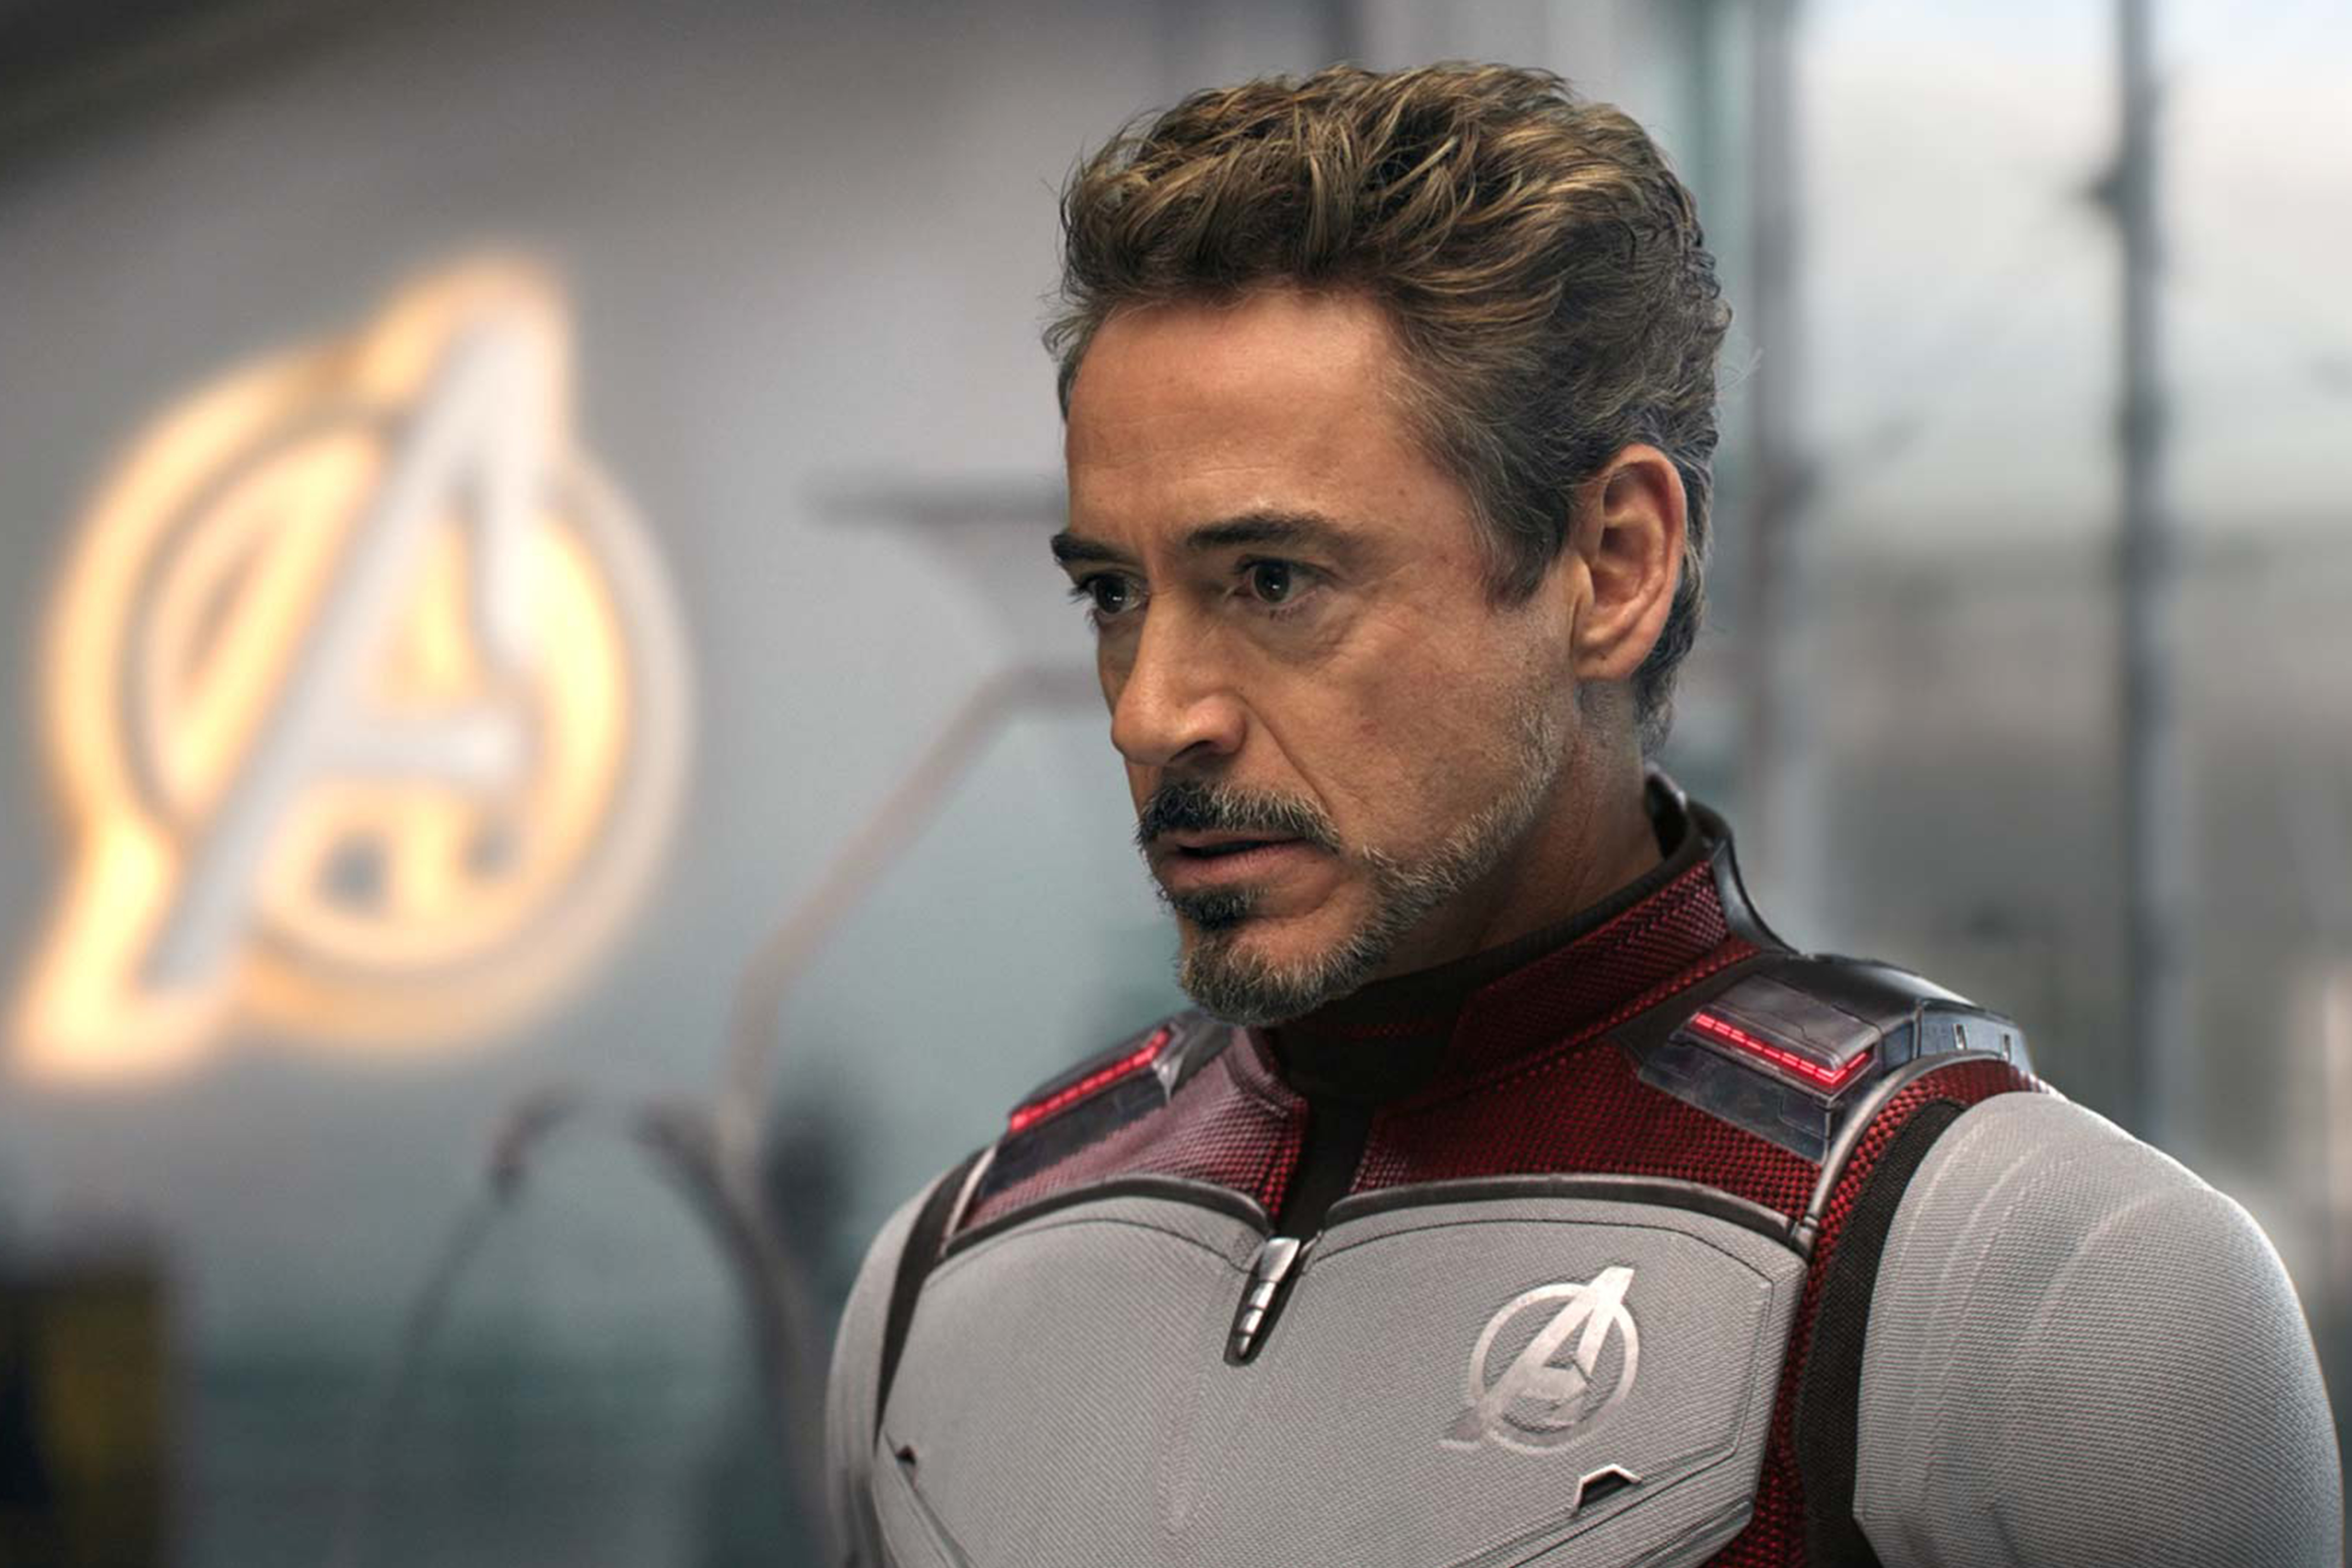 Robert Downey Jr. post Avengers EndGame unreleased behine the scene